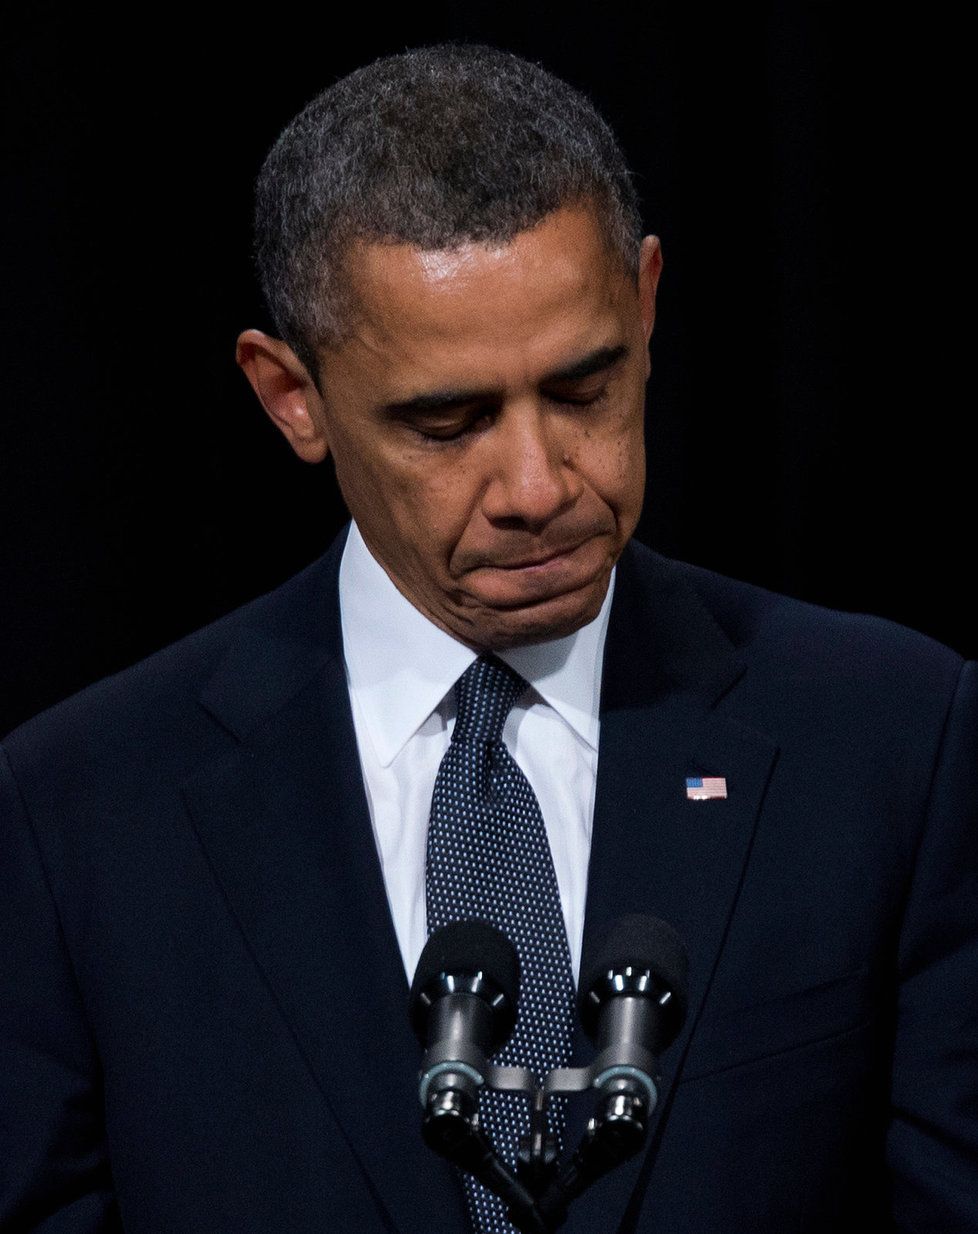 Barack Obama a jeho smutek za oběti masakru v Newtownu